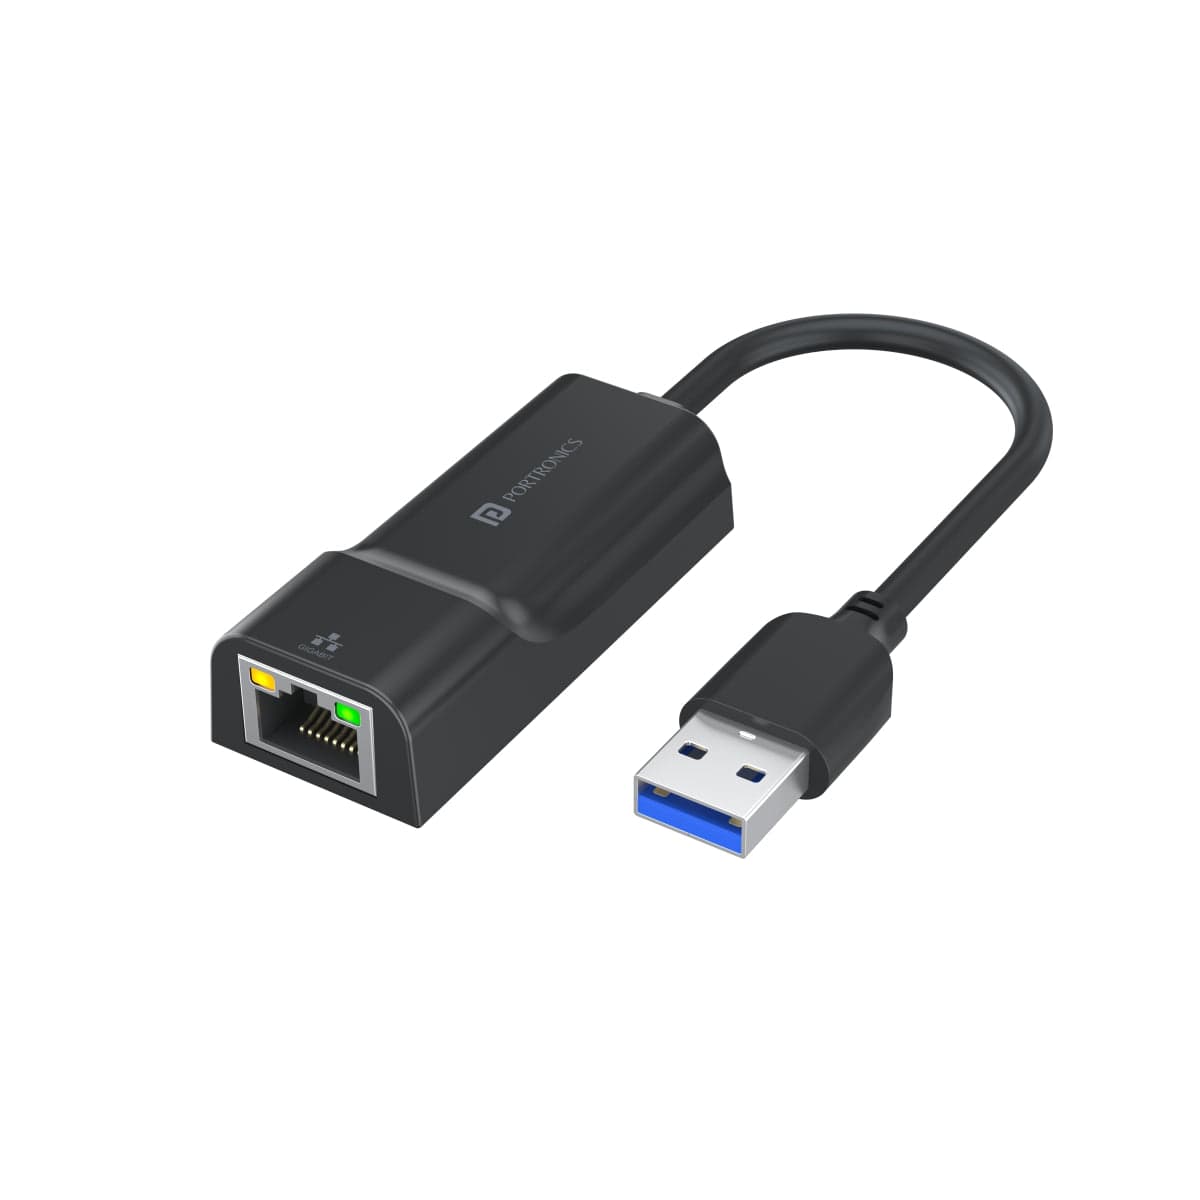 PORTRONICS-Mport 45 - 3.0 Ethernet USB Hub